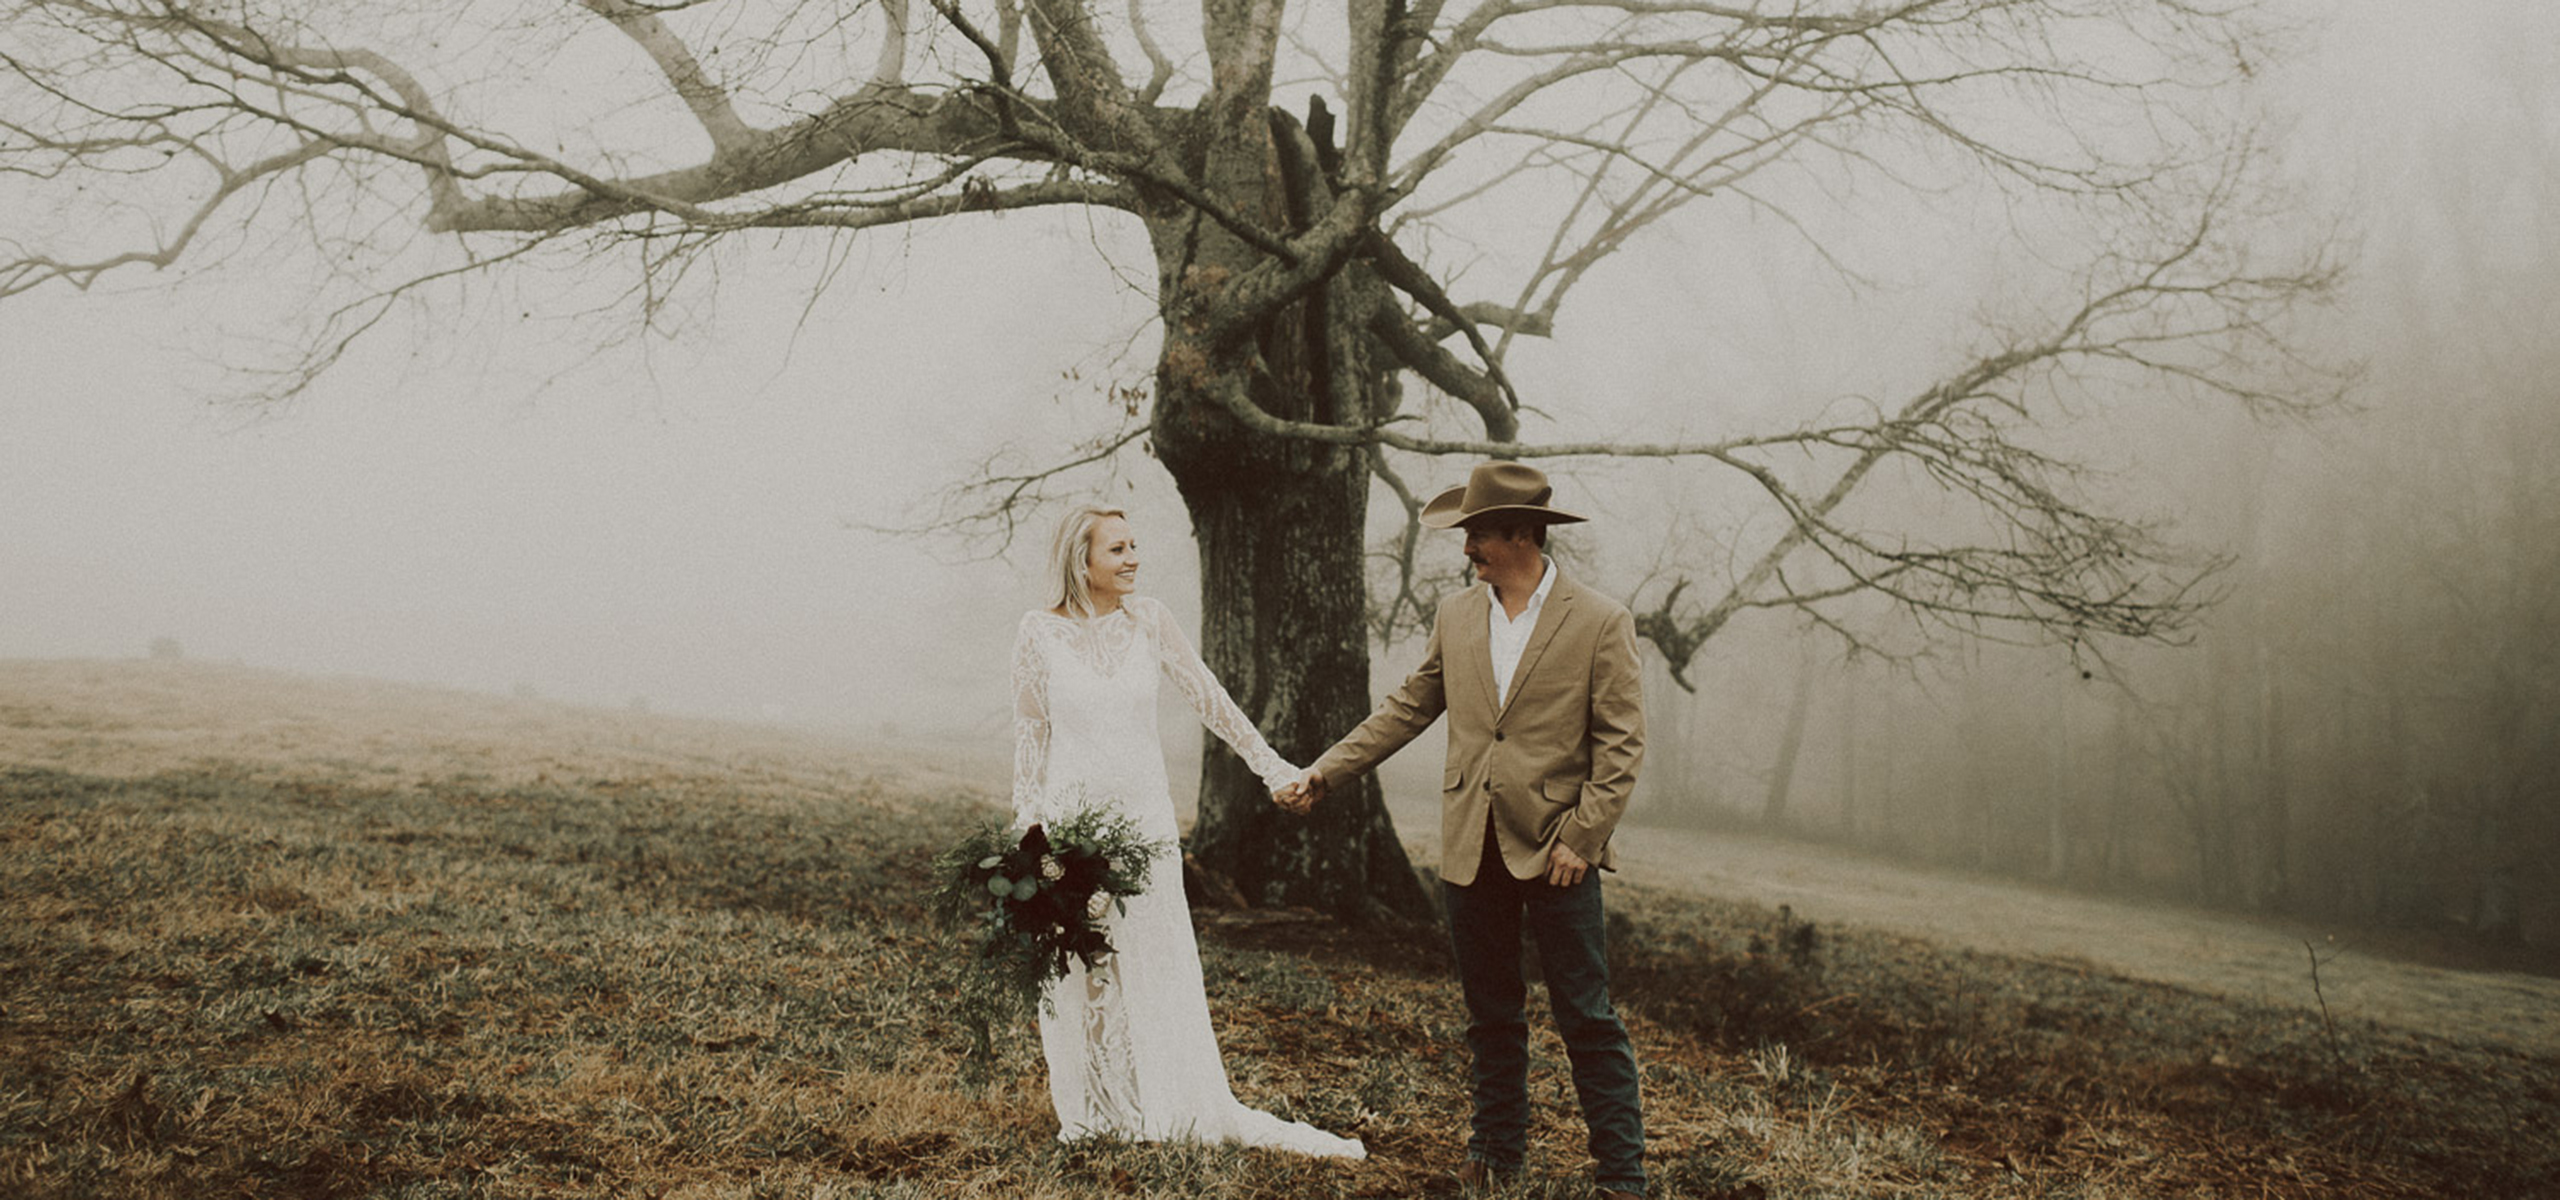 Trinidad Colorado Micro-Wedding Elopement Photography